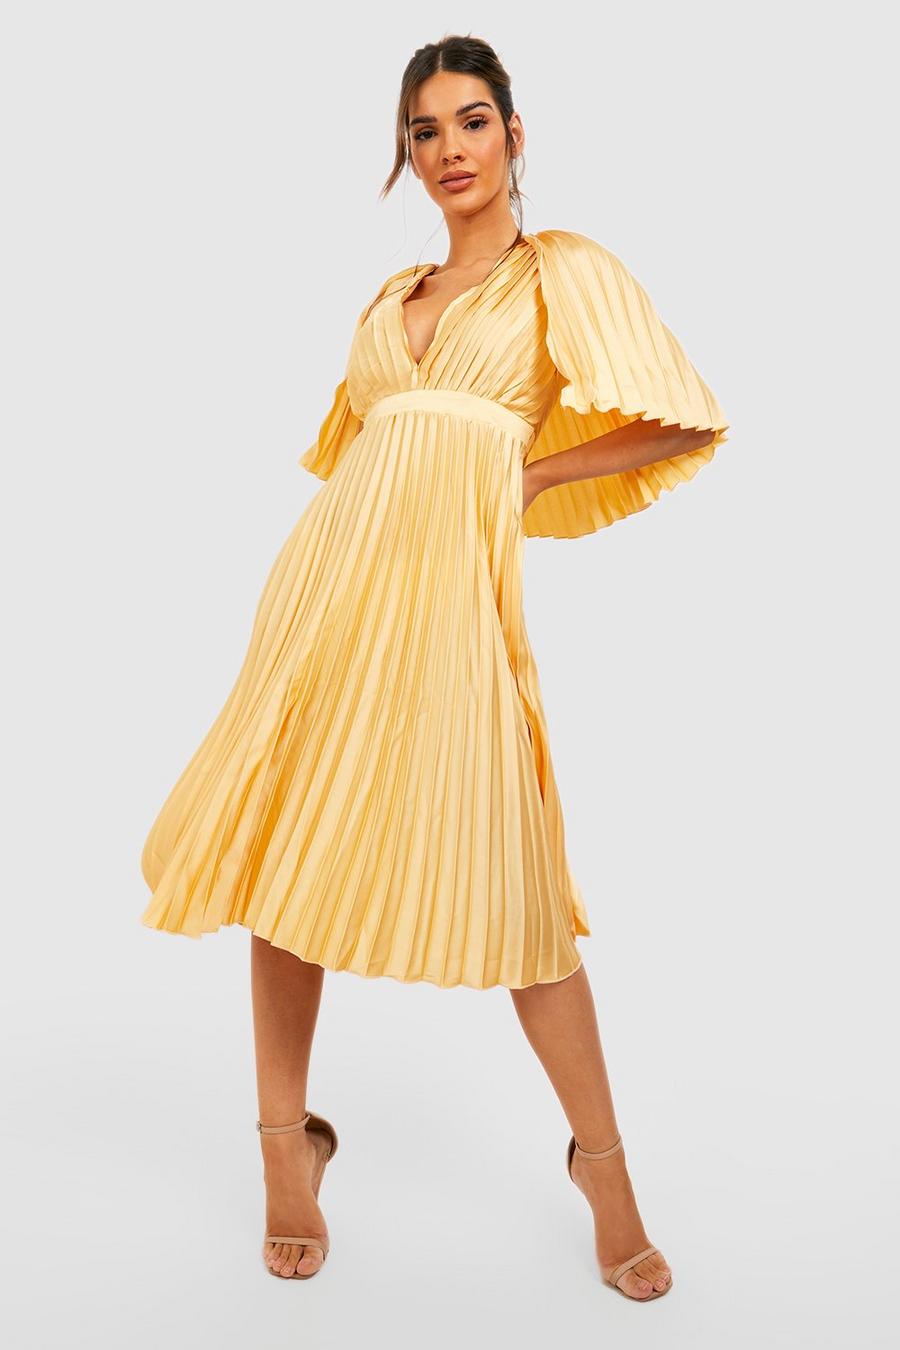 לימון amarillo שמלת שושבינה באורך מידי עם קפלים ושכמייה